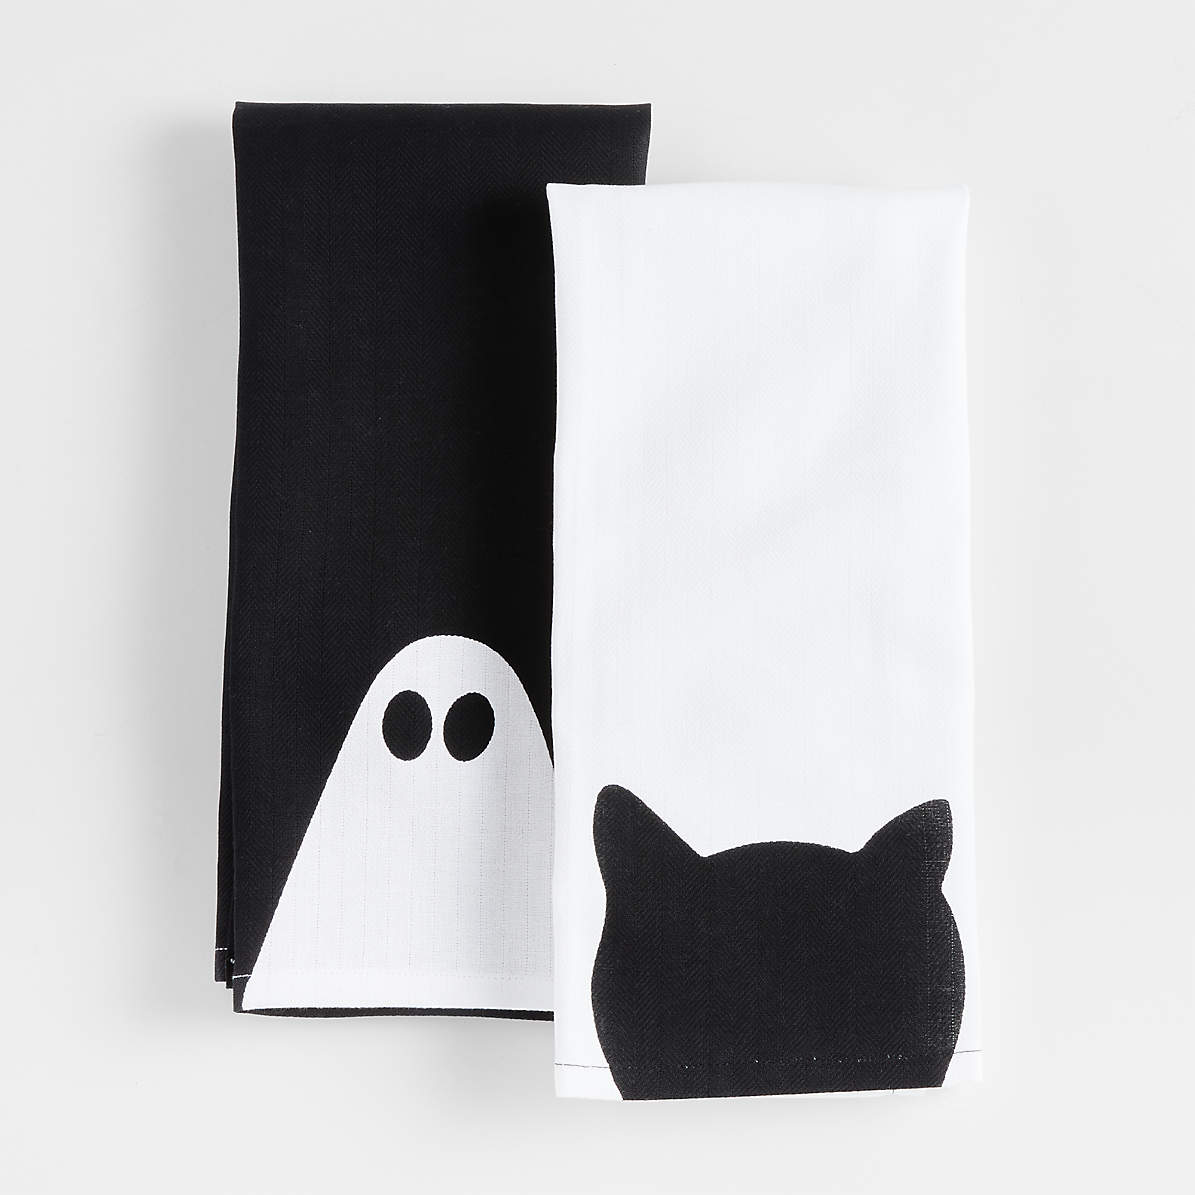 Details about   Salem's Halloween Black Cat Kitchen Towels NEW x2 